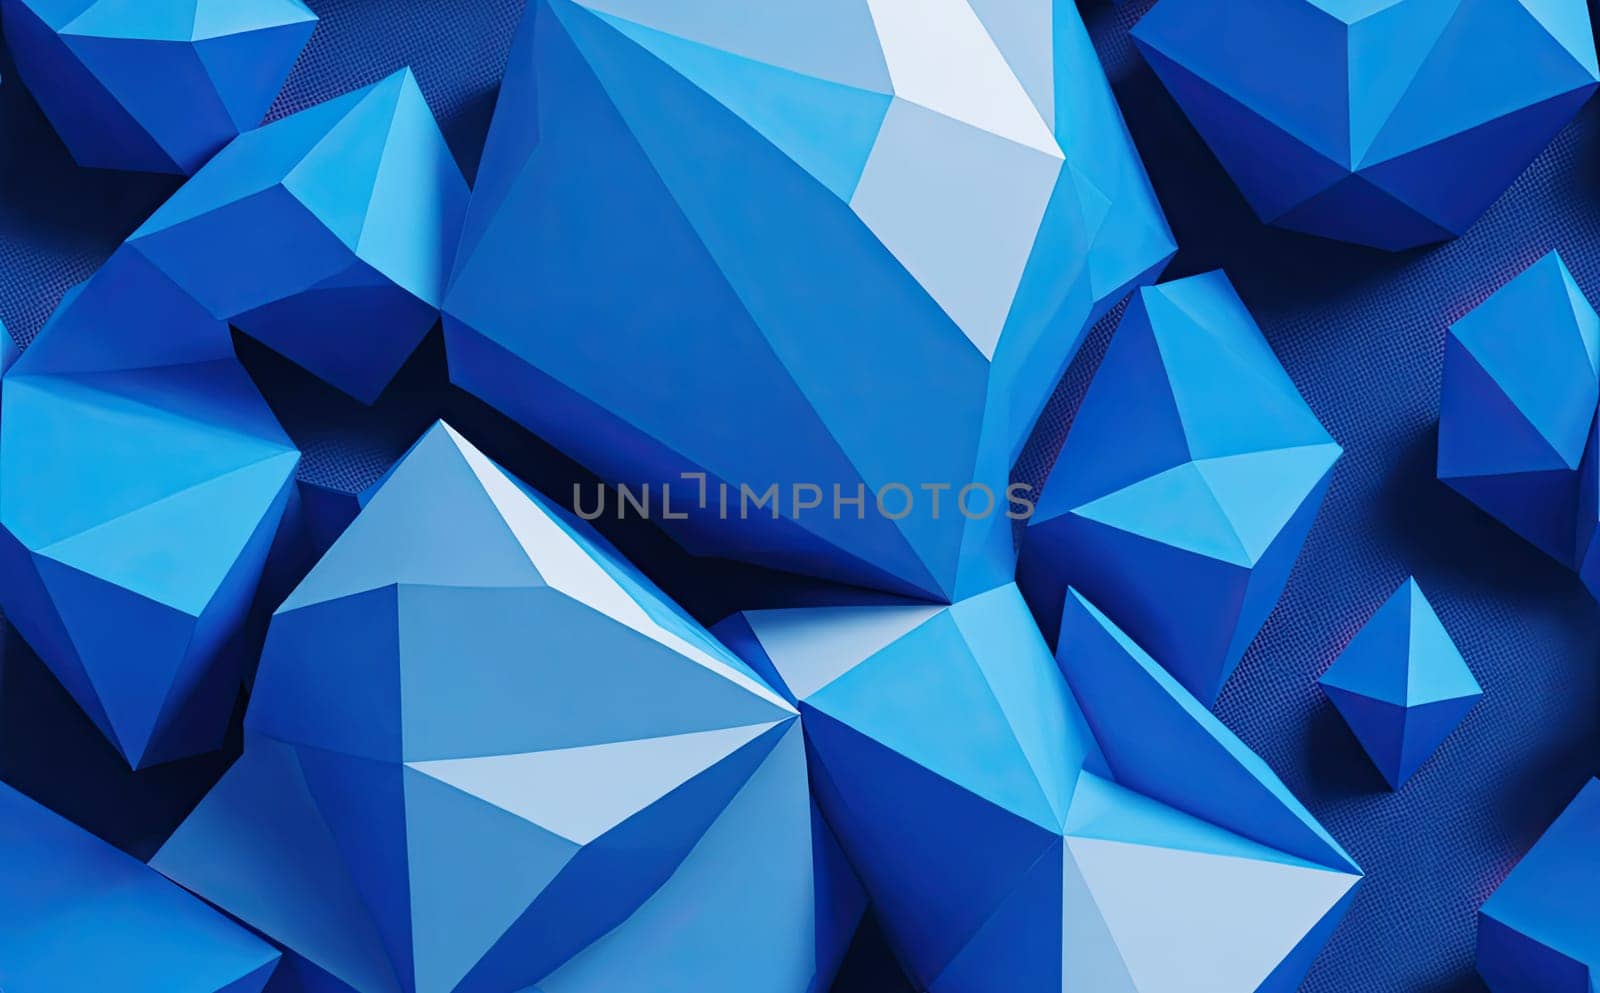  blue color geometric concept, by Ladouski